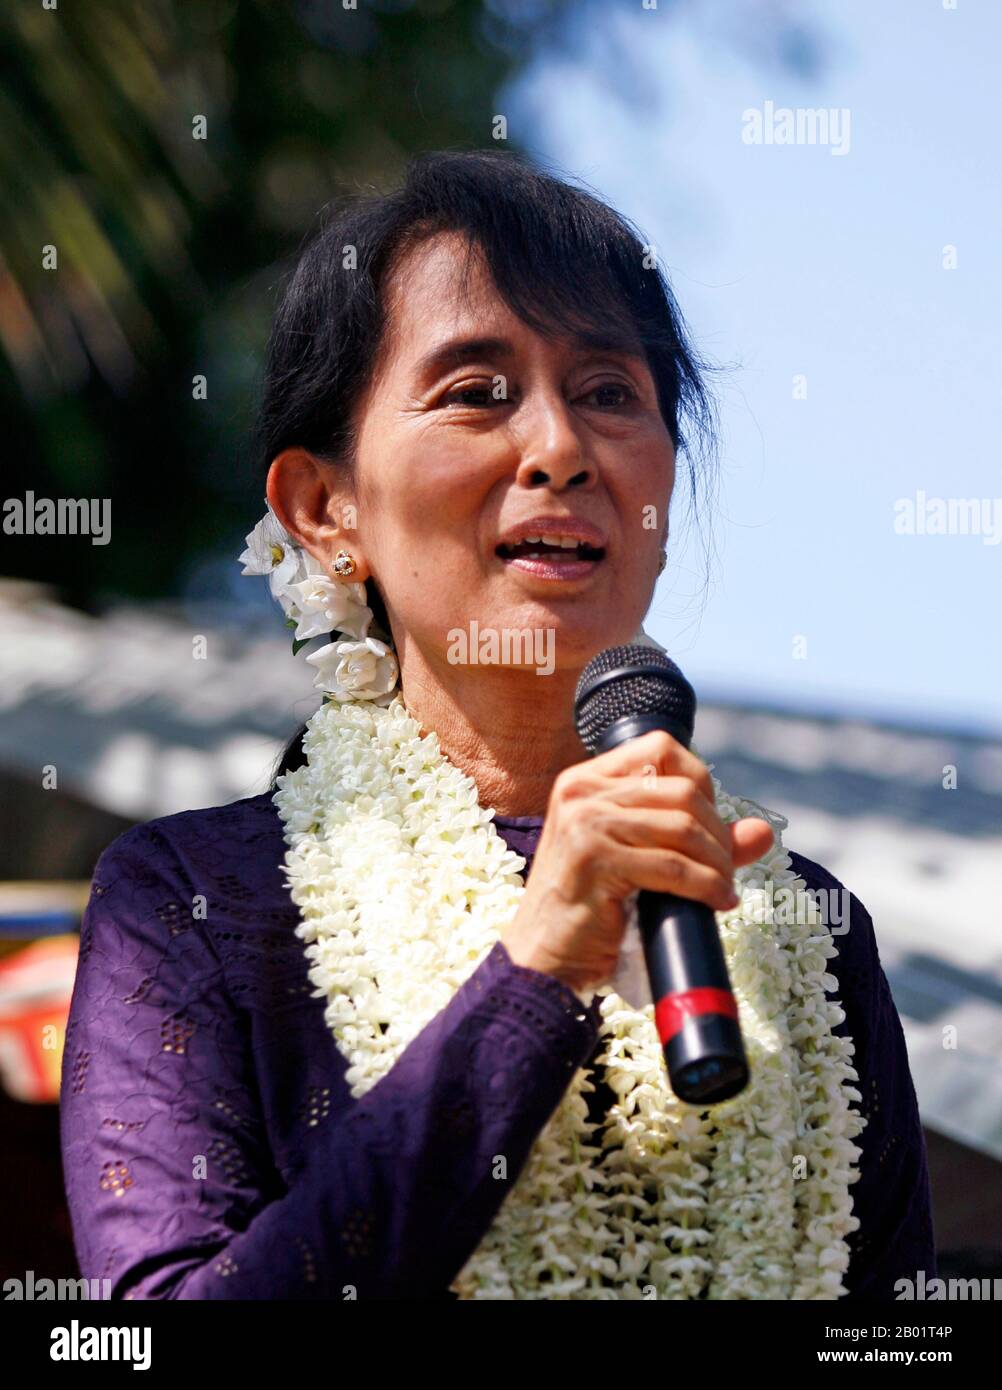 Birmania/Myanmar: Aung San Suu Kyi, leader della Lega nazionale per la democrazia, rivolgendo i suoi sostenitori presso la Hlaing Thar Yar Township, Yangon, 17 novembre 2011. Foto di Htoo Tay Zar (licenza CC BY-SA 3,0). Aung San Suu Kyi (19 giugno 1945) è una diplomatica, politica e scrittrice birmana che ha servito come Consigliere di Stato del Myanmar (posizione equivalente a un primo ministro) dal 2016 fino a quando è stata rovesciata e imprigionata dalla giunta militare nel 2021. Era la figlia più giovane di Aung San, padre della Nazione del Myanmar moderno, ed era a capo del partito Lega Nazionale per la democrazia (NLD). Foto Stock